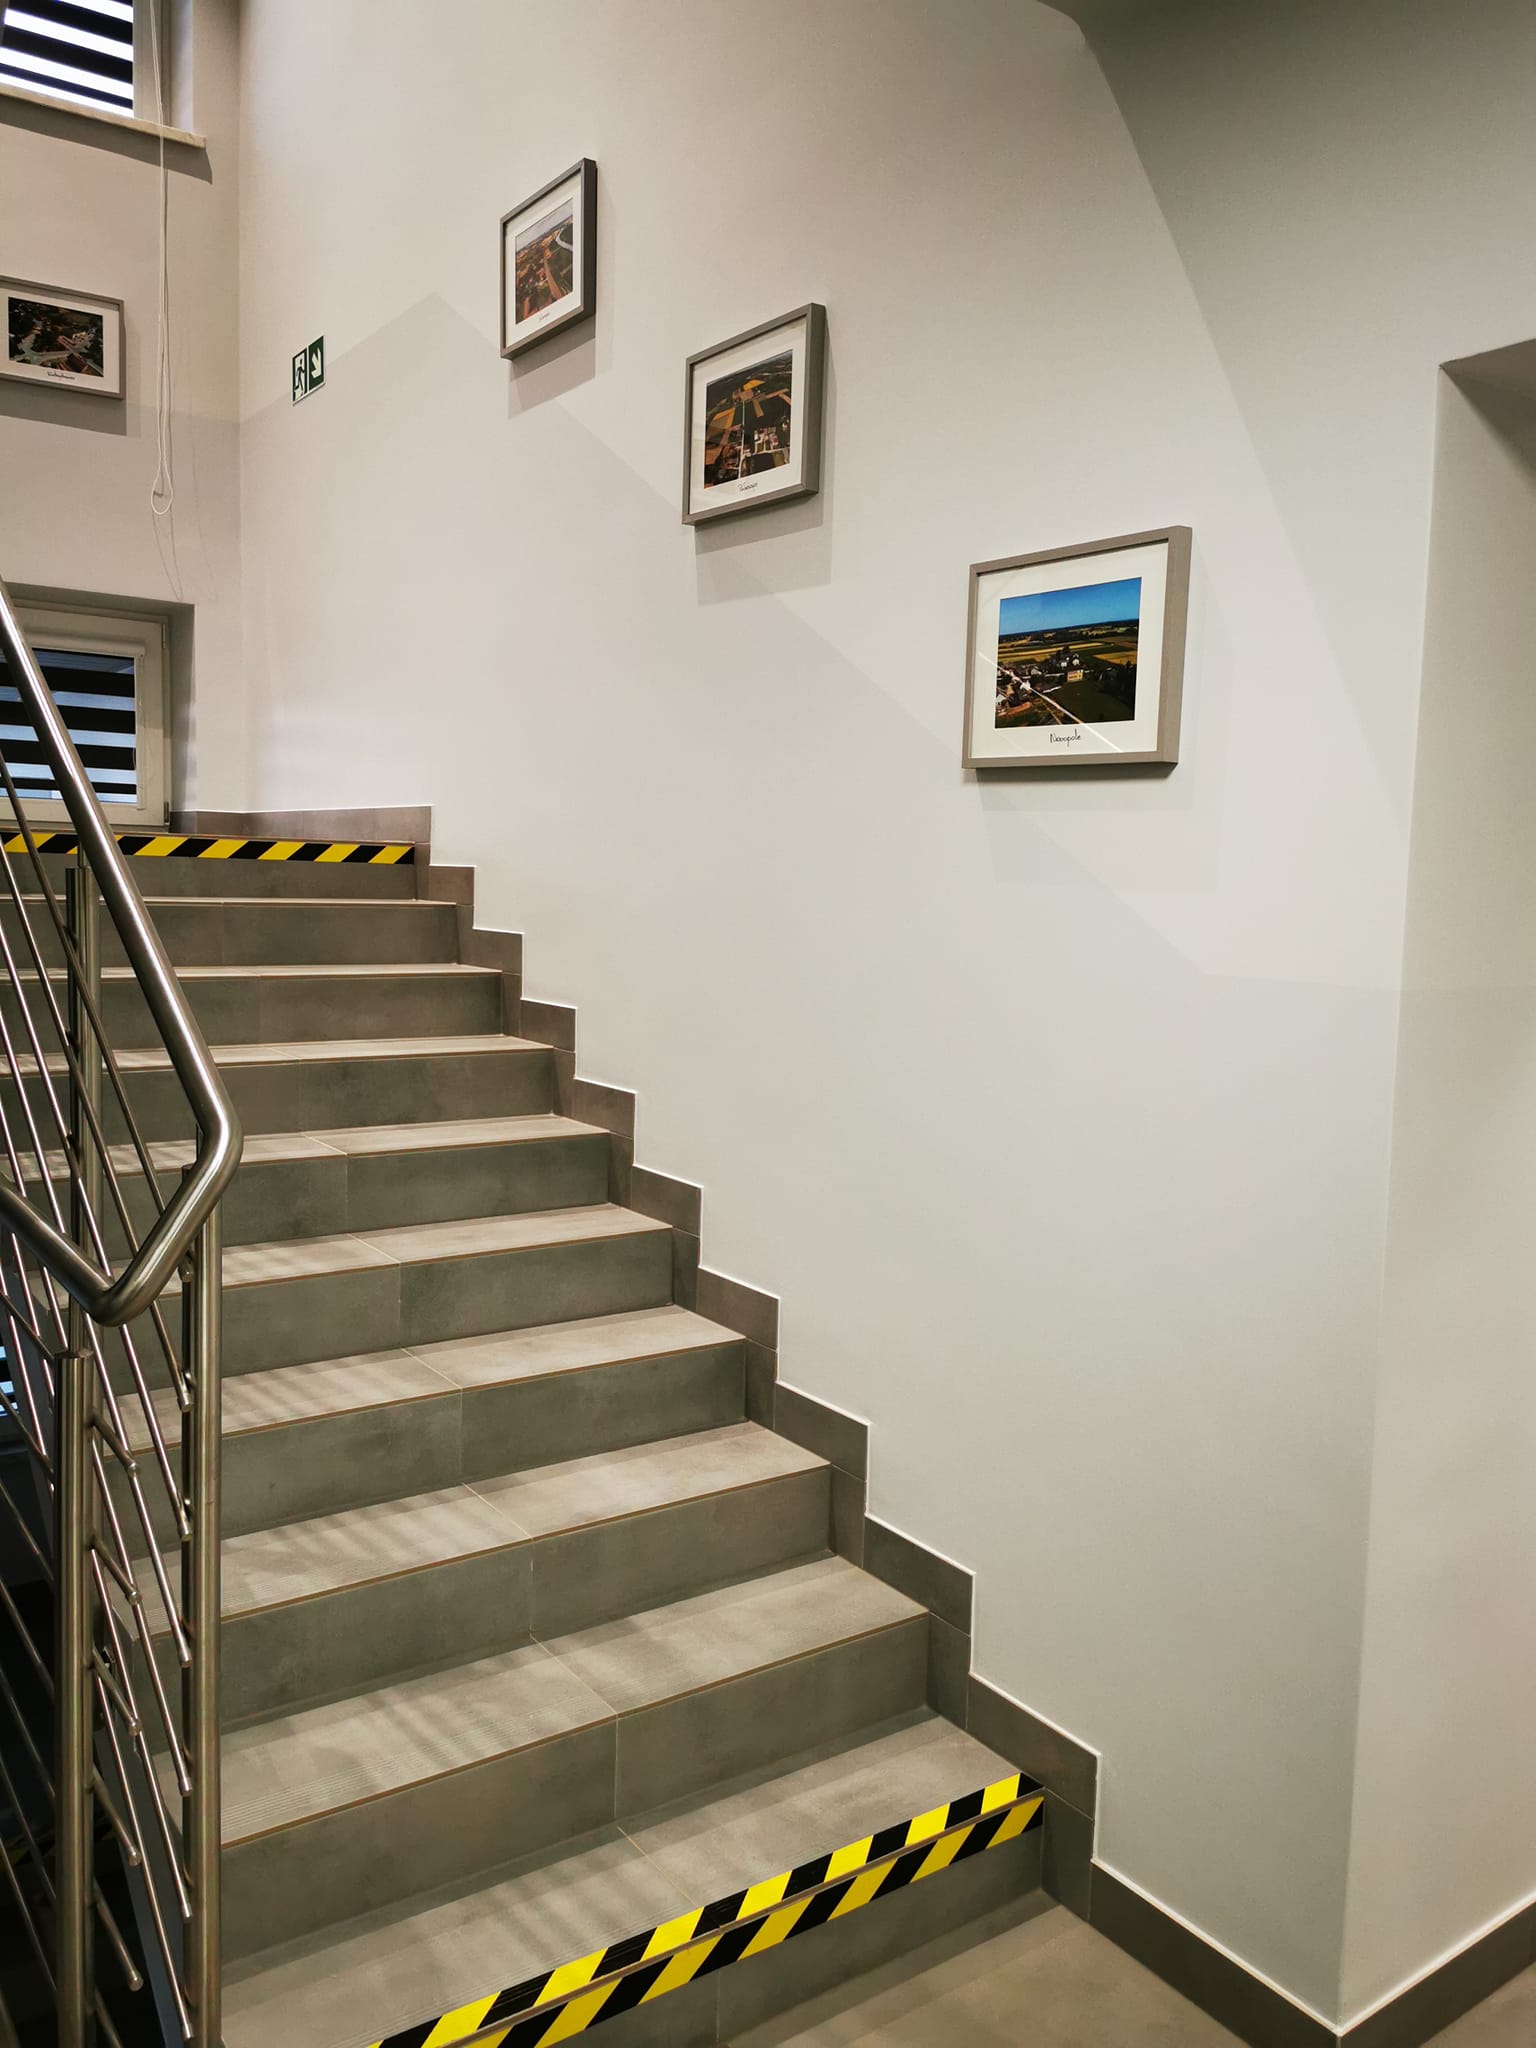 zdjęcie przedstawia fragment schodów i ściany w holu budynku urzędu gminy Wietrzychowice. Schody z płytek w kolorze szarym, srebrna bariera. Na ścianach wiszą zdjęcia.